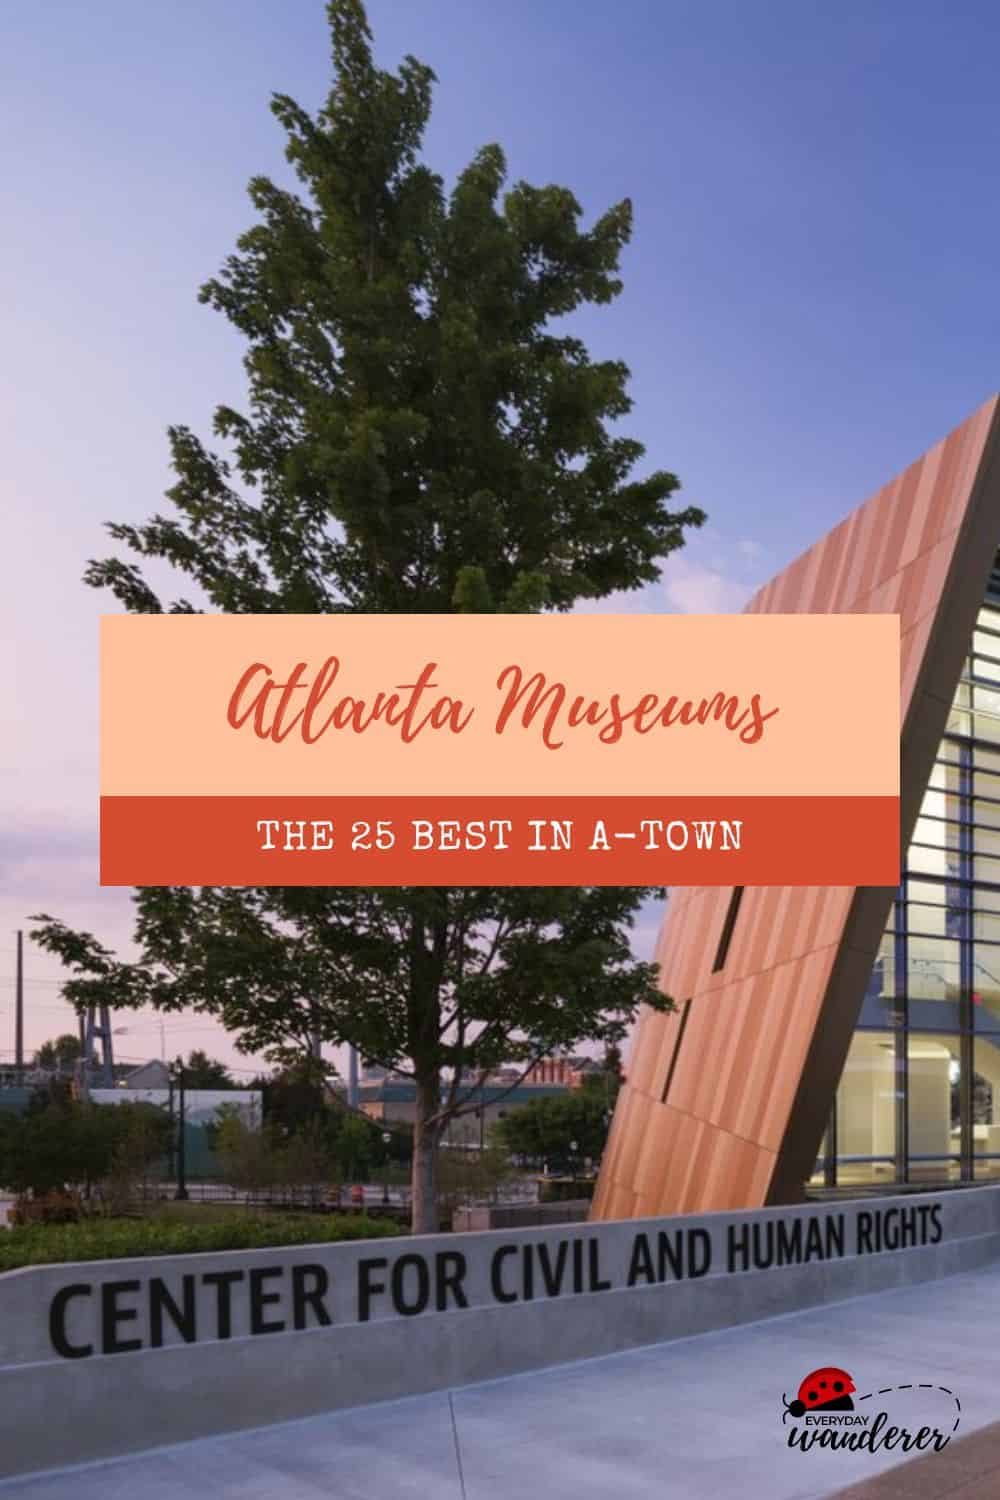 Atlanta Museums - New Pin 2 - JPG